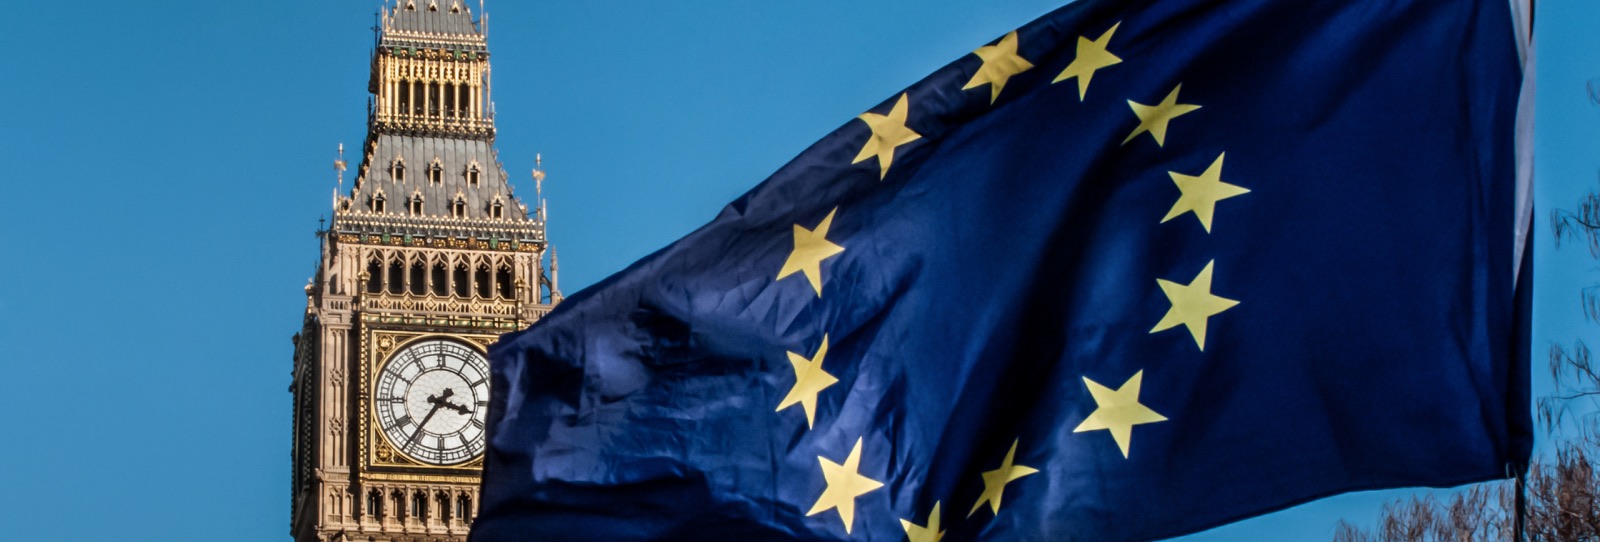 EU flag flying in front of Big Ben